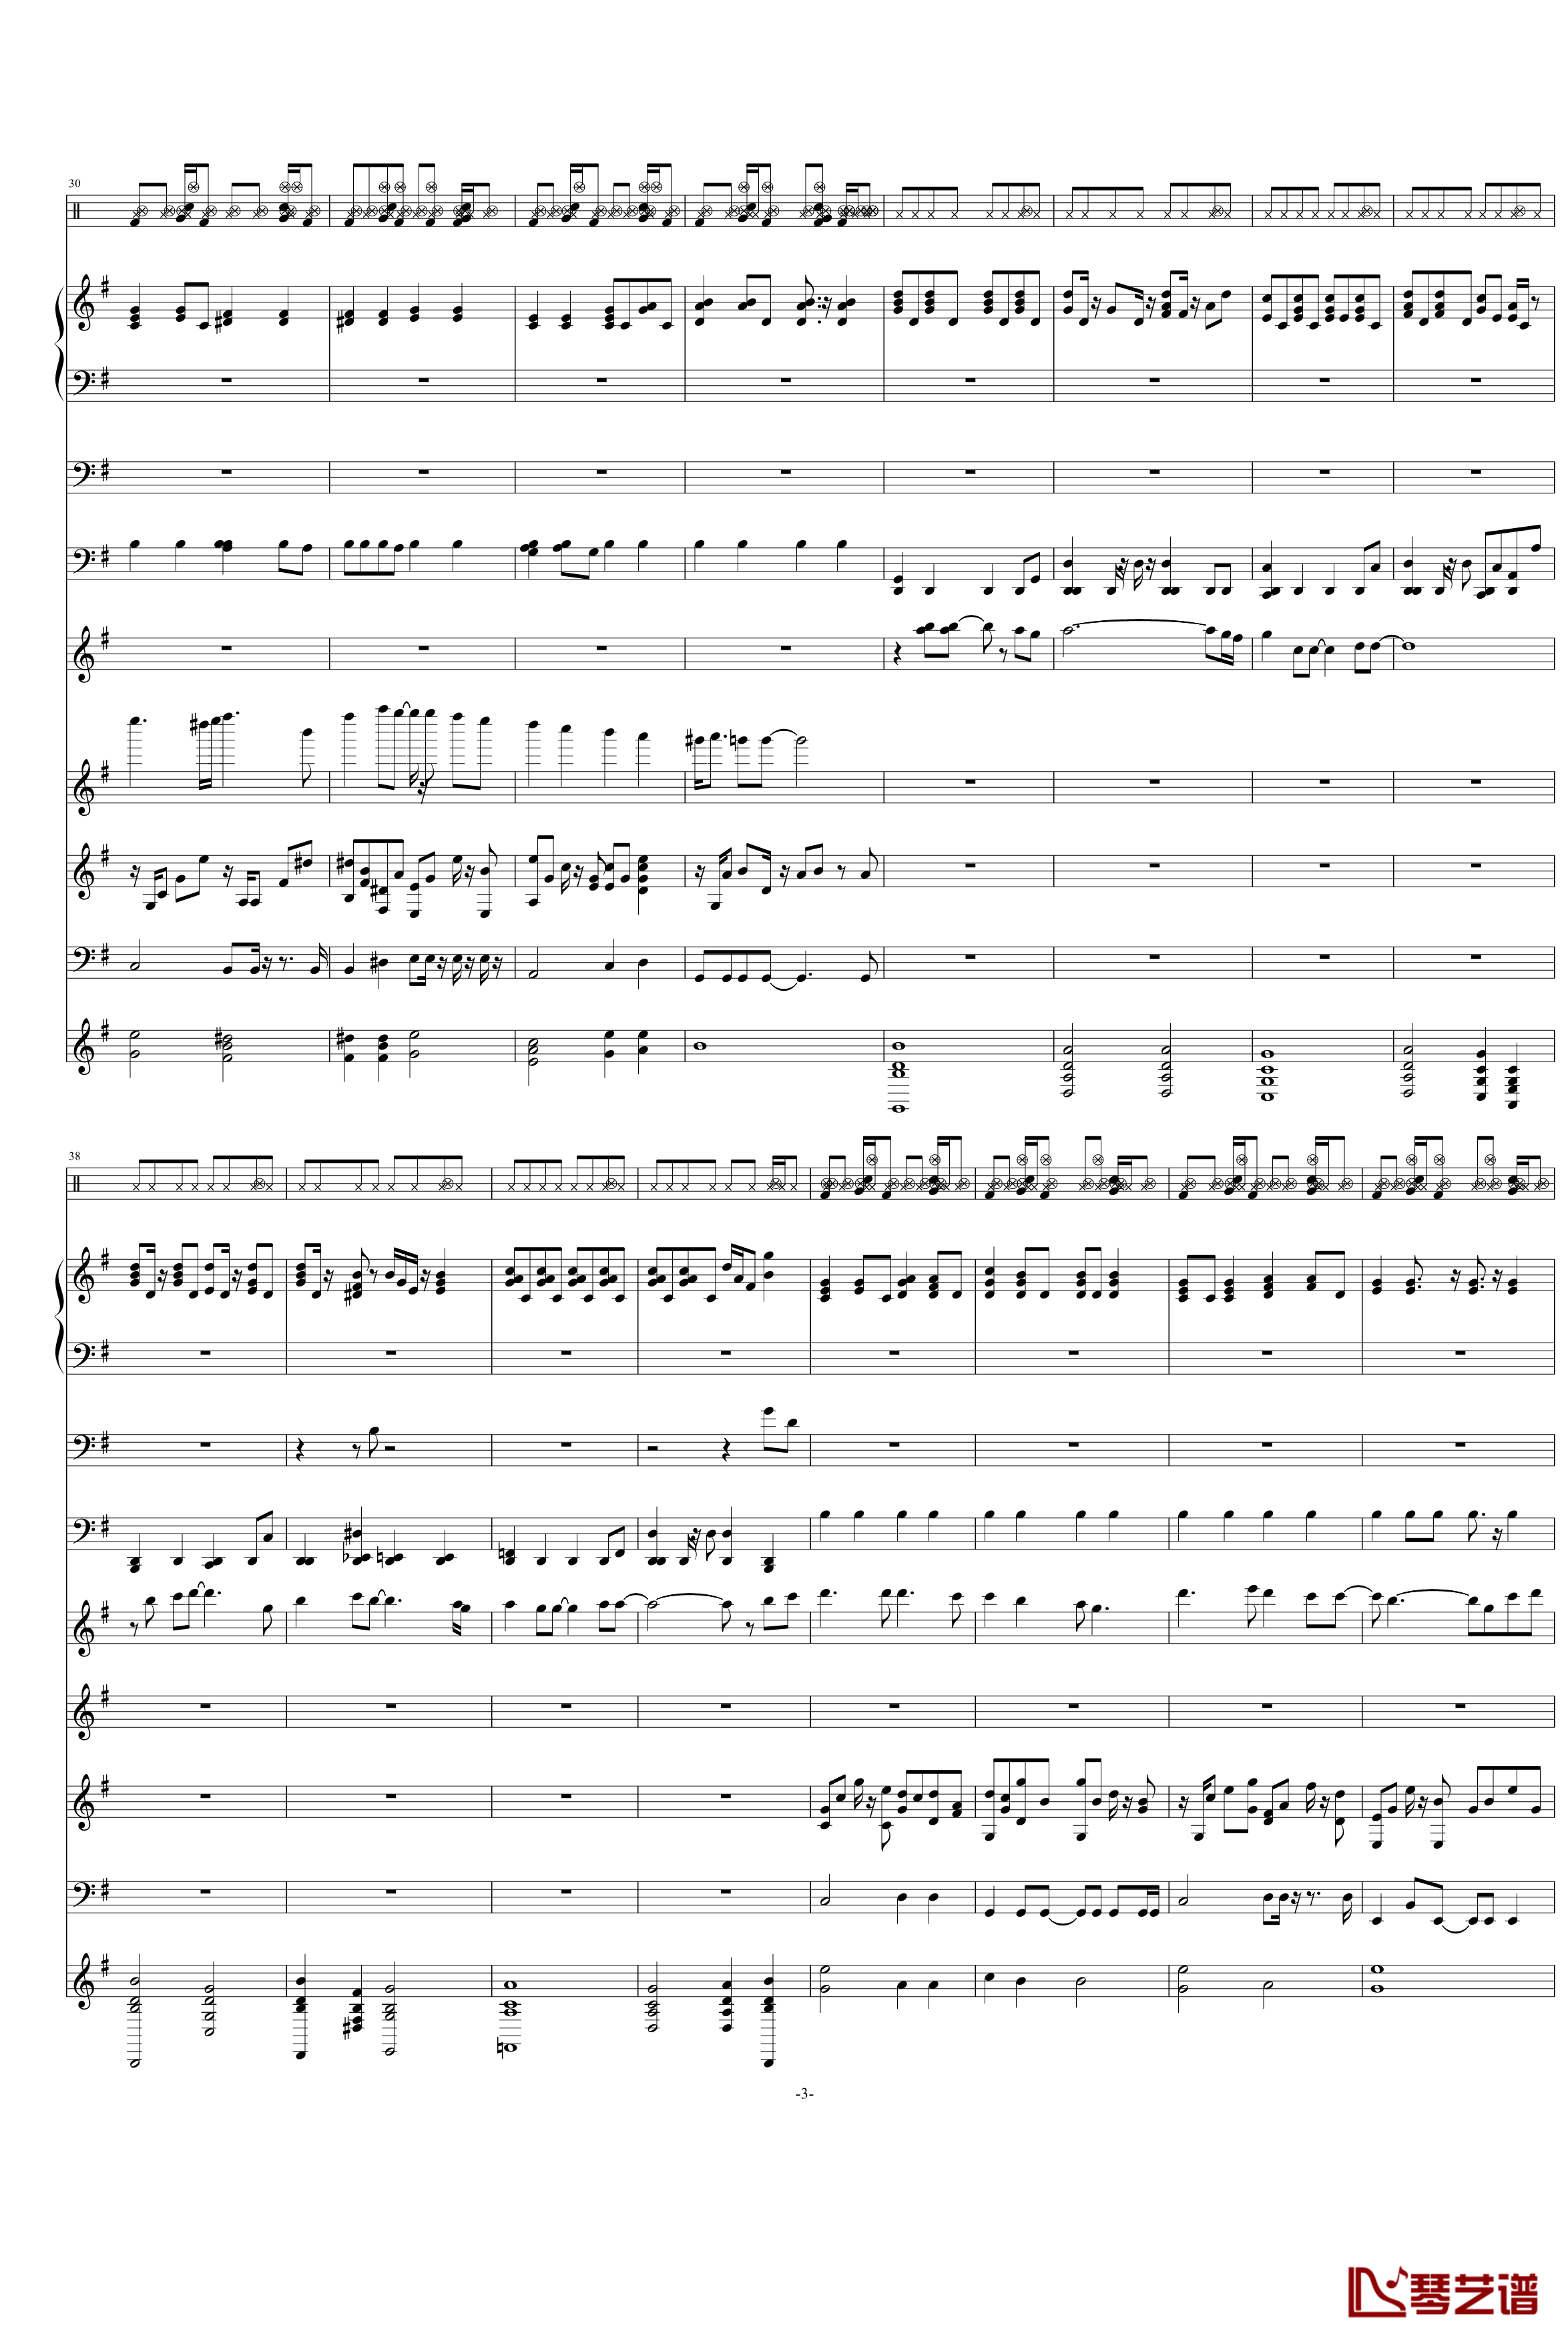 天竺星空钢琴谱-VST重新修改-swenl3